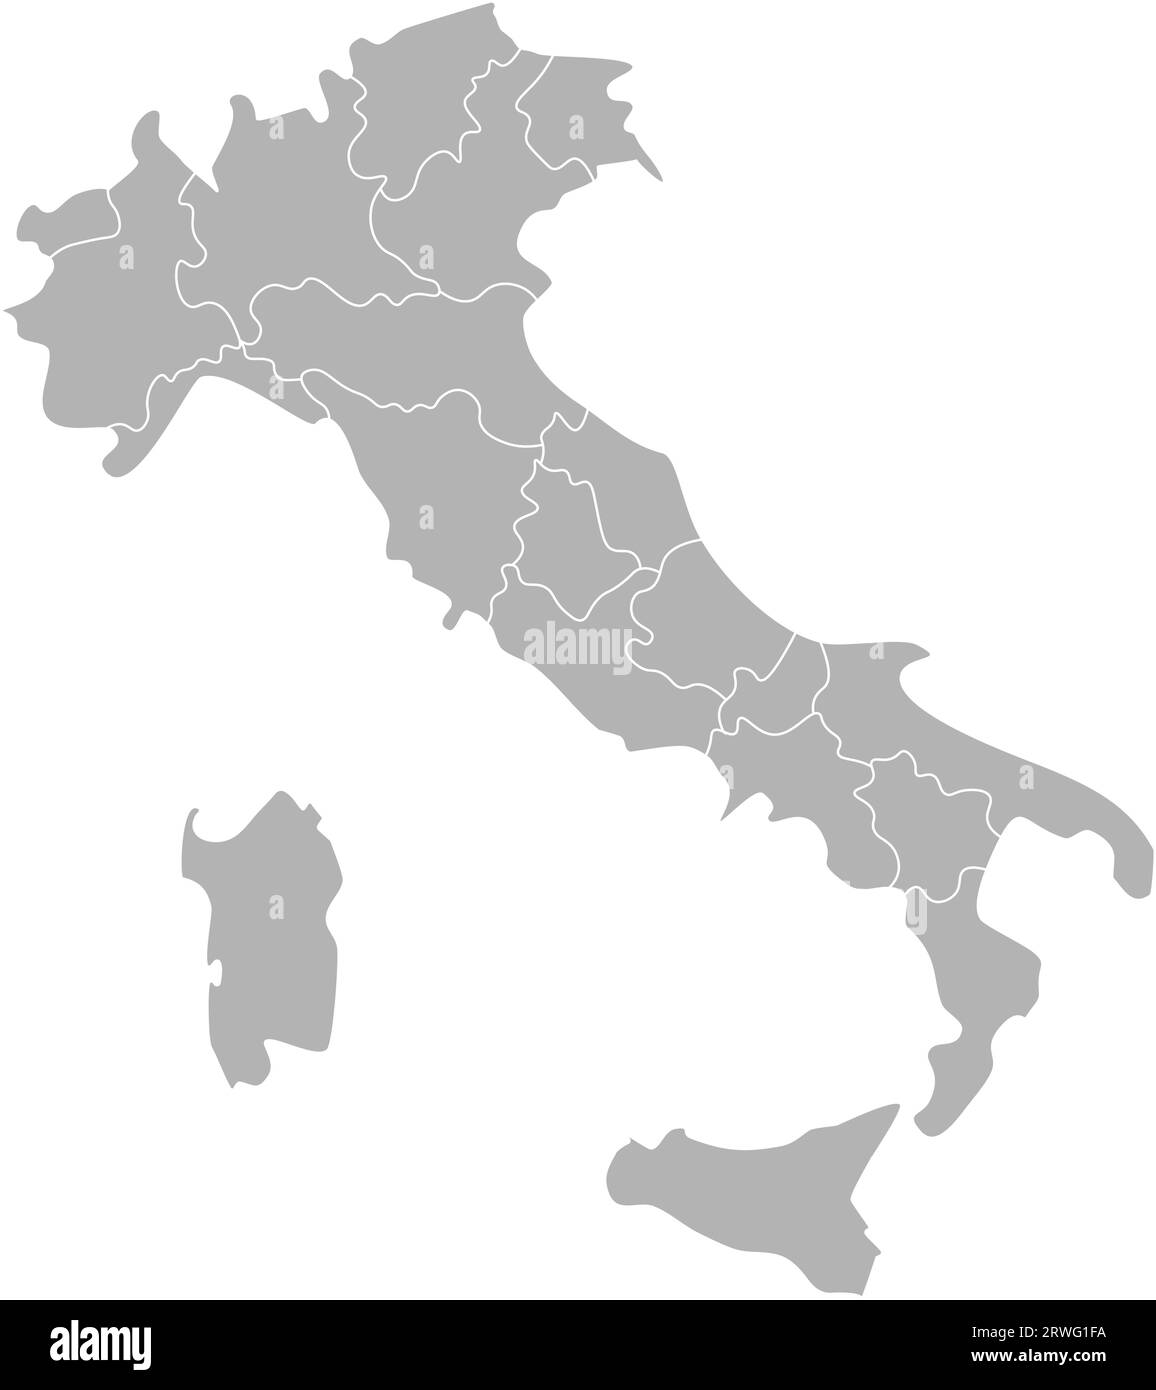 Illustrazione vettoriale isolata della mappa amministrativa semplificata dell'Italia. Confini delle province (regioni). Silhouette grigie. Contorno bianco. Illustrazione Vettoriale